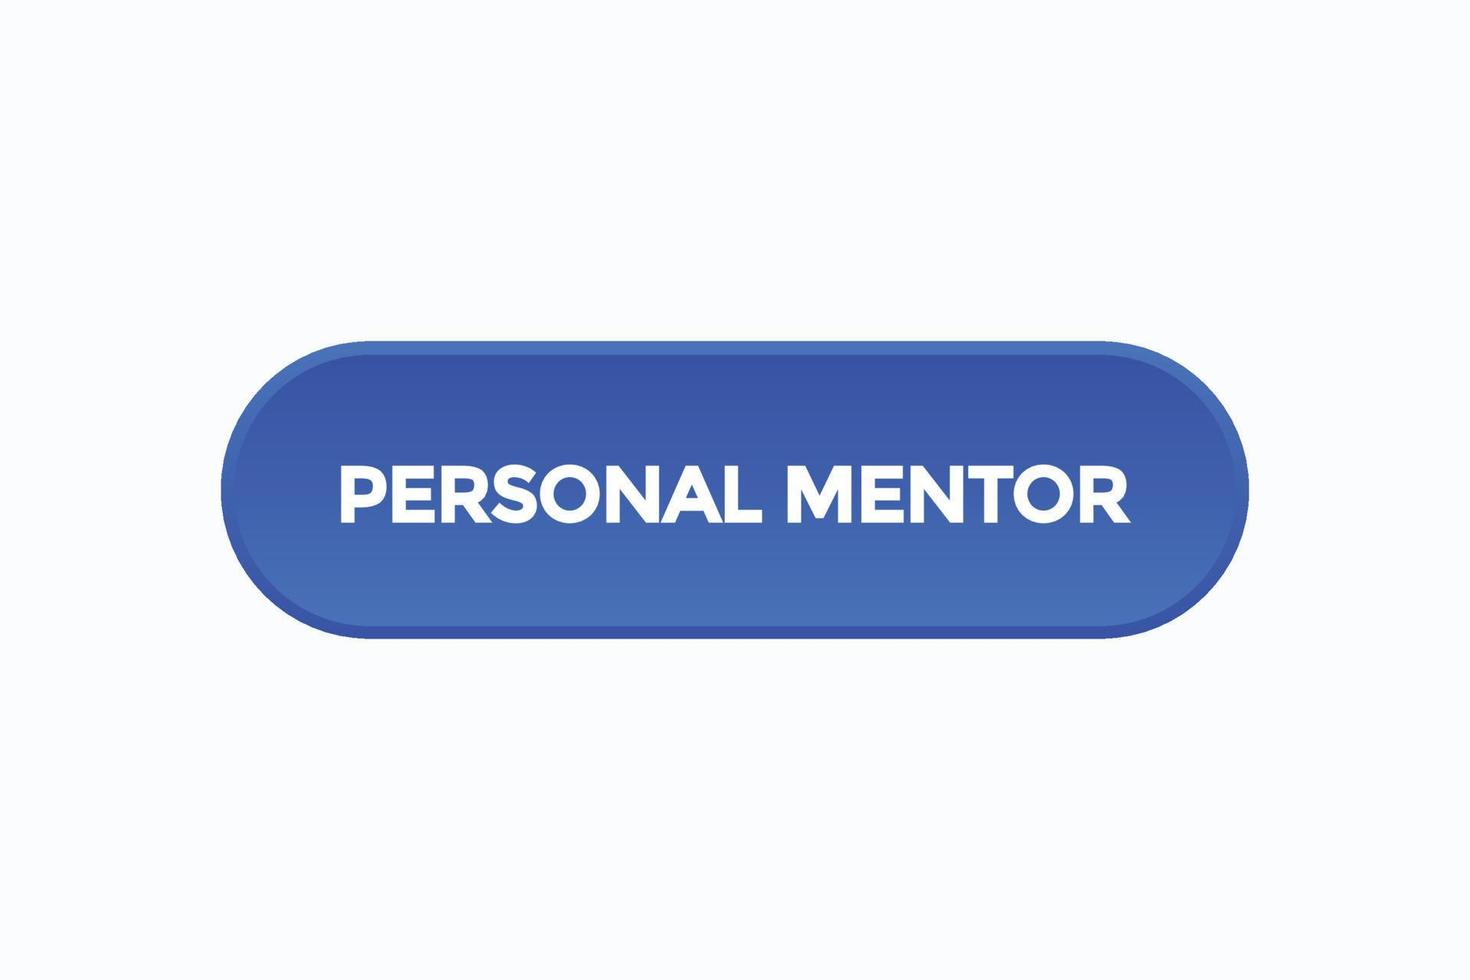 grundläggande rgbpersonal mentor knapp vectors.sign märka Tal bubbla personlig mentor vektor